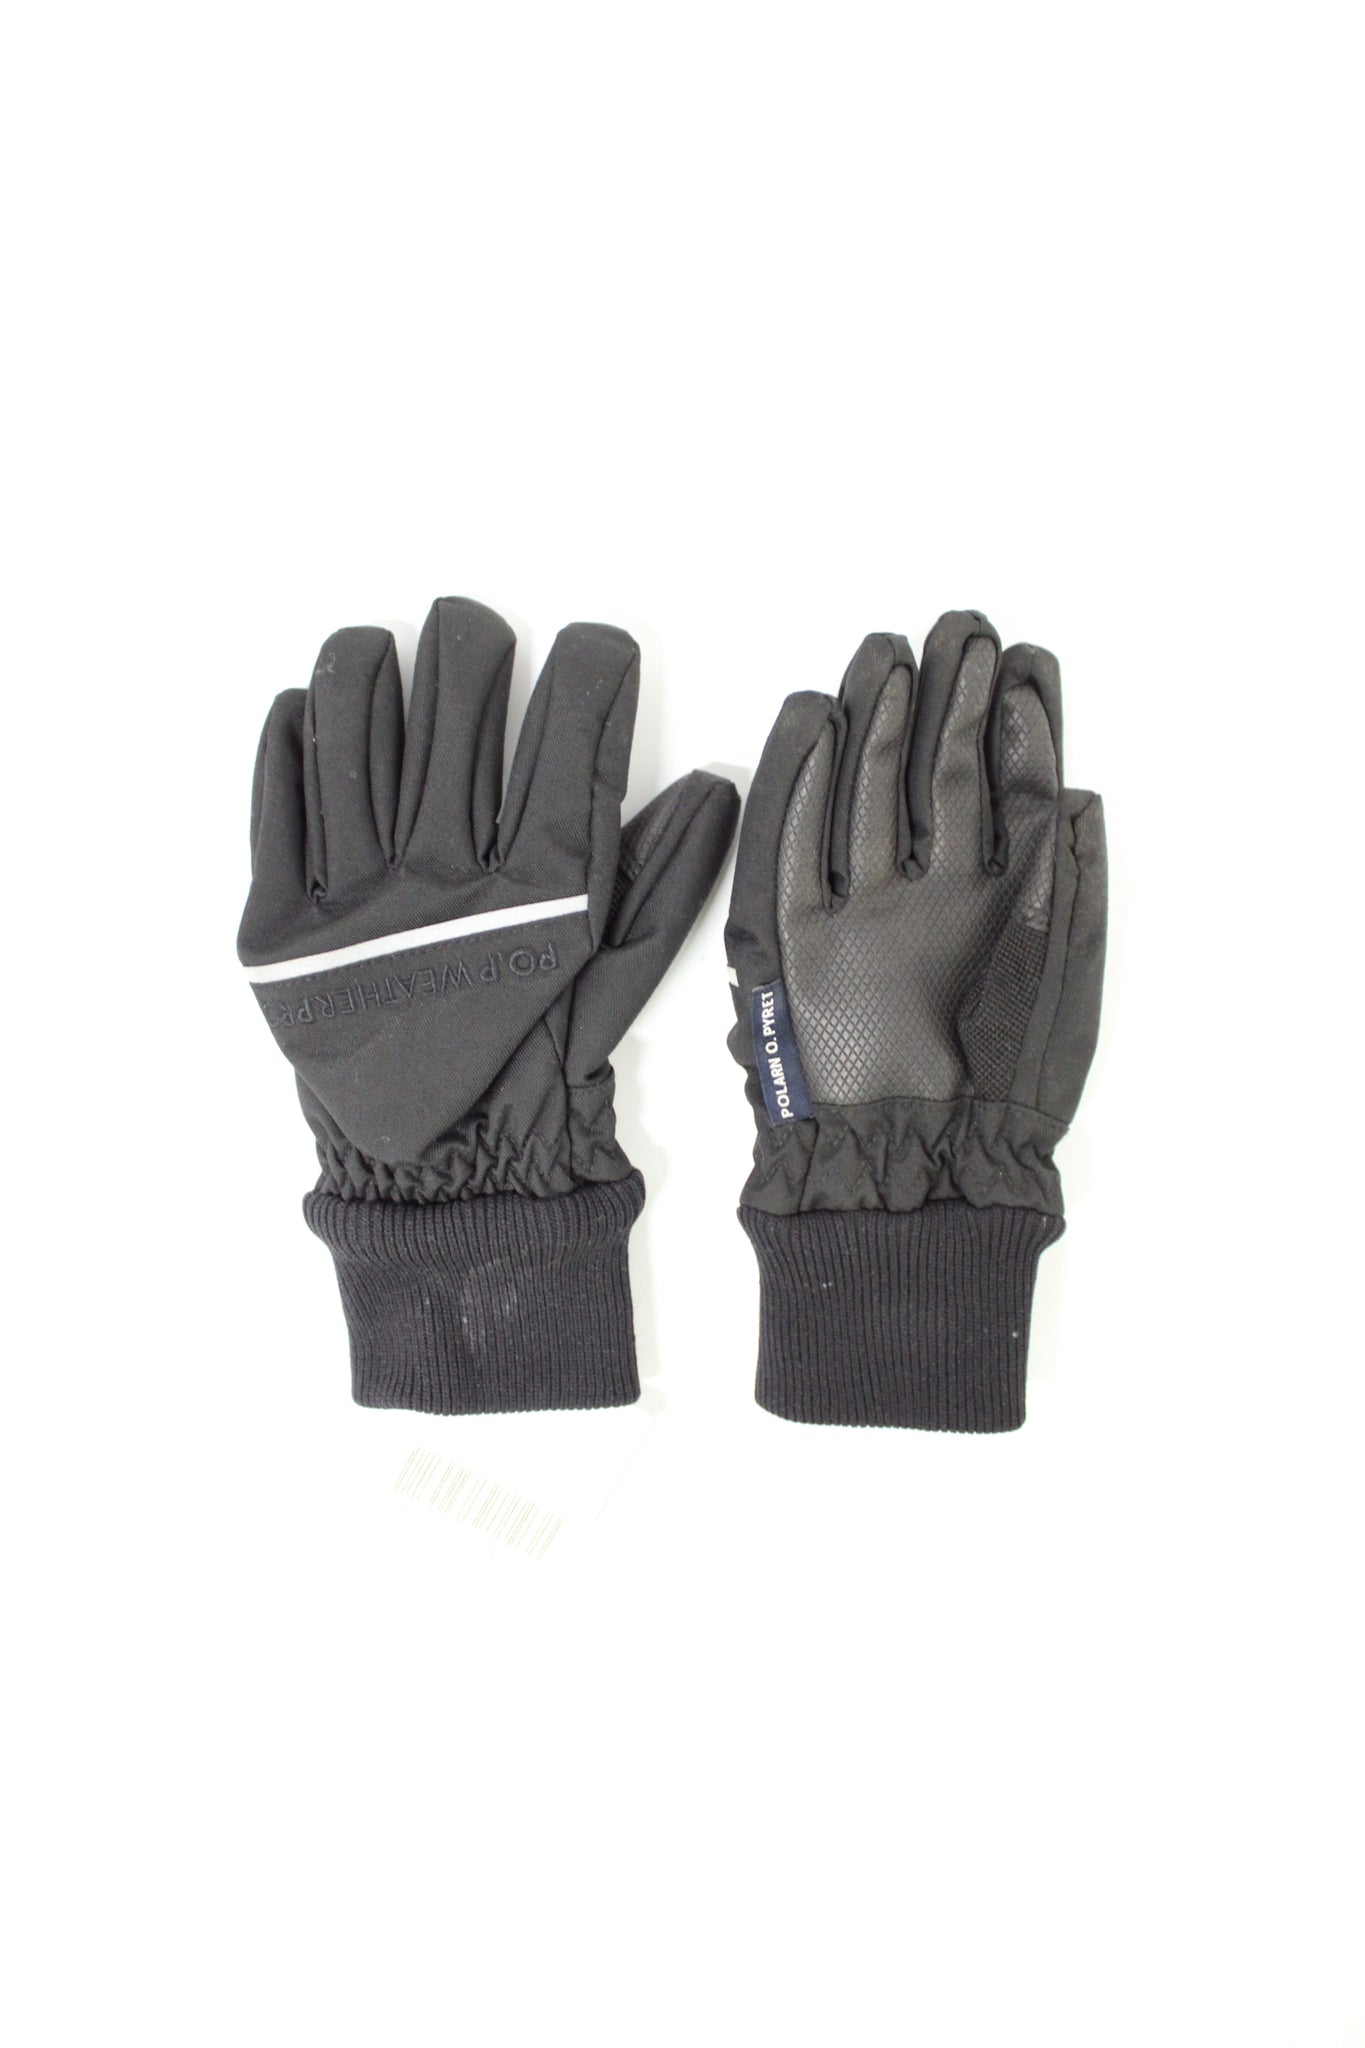 Kids Gloves 2-4y / 3